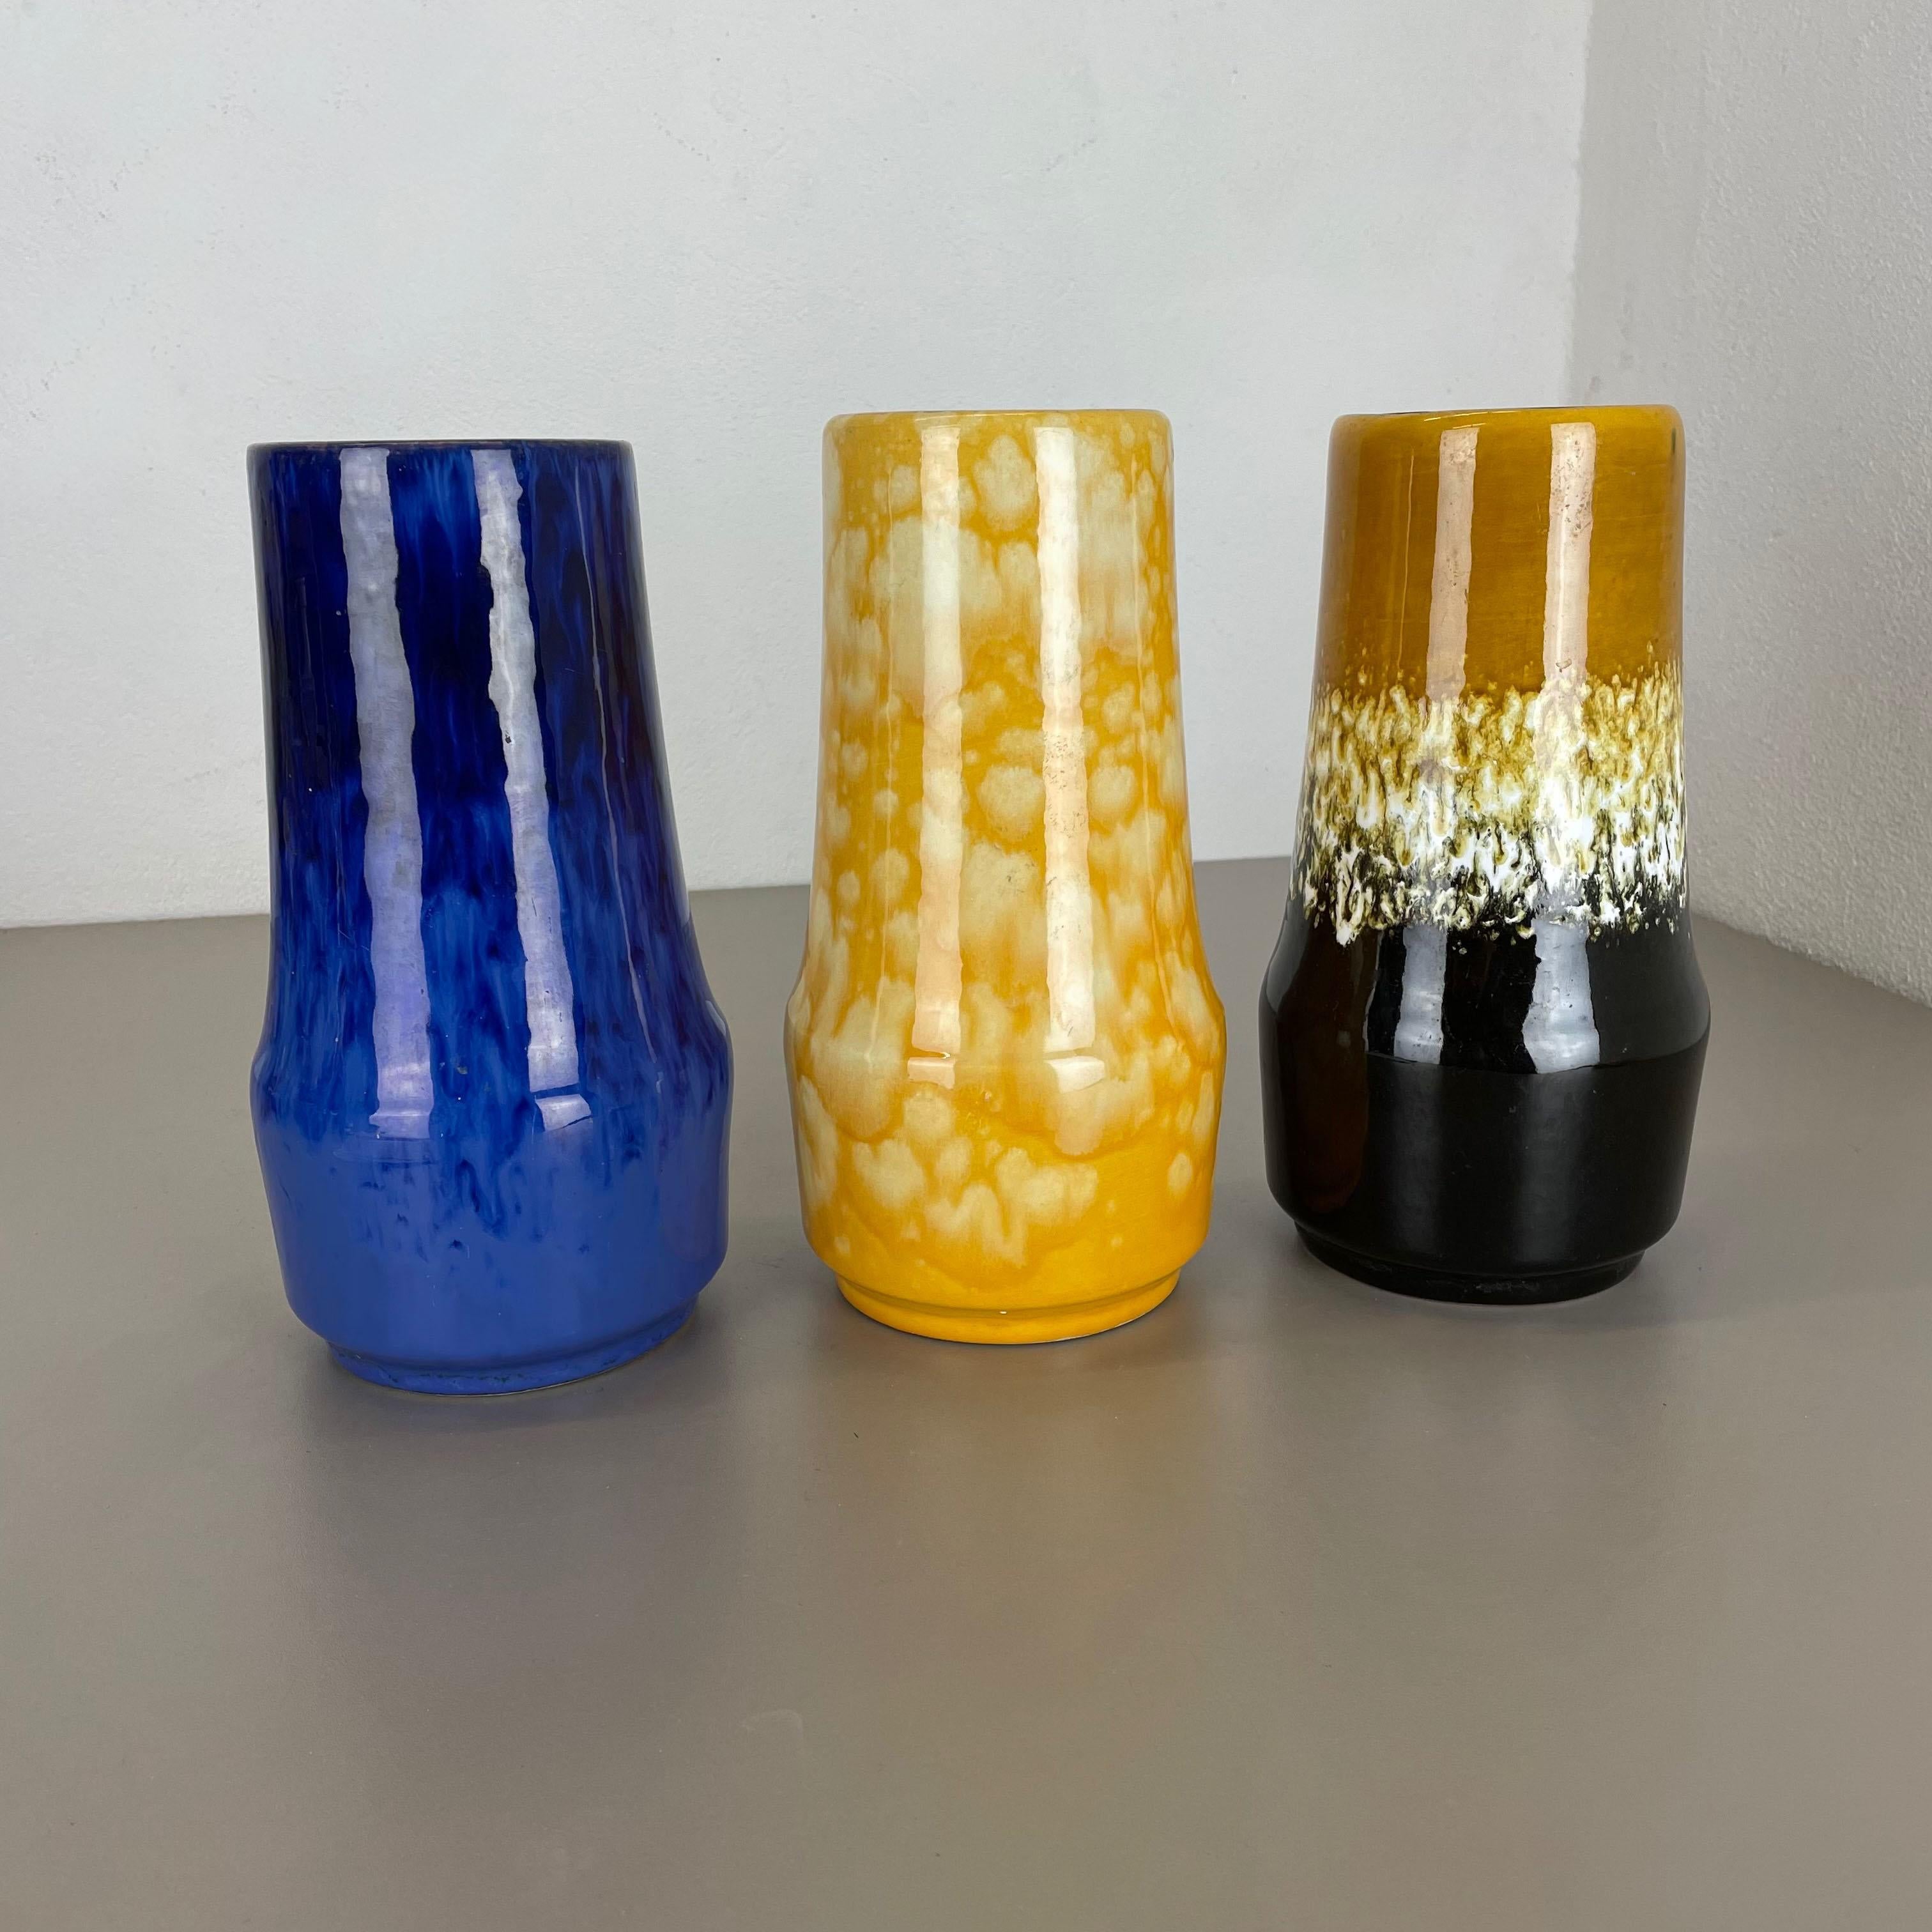 Artikel:

Satz von drei fetten Lavakunstvasen


Produzent:

Scheurich, Deutschland



Jahrzehnt:

1970s


 

Diese originalen Vintage-Vasen wurden in den 1970er Jahren in Deutschland hergestellt. Sie ist aus Keramik in fetter